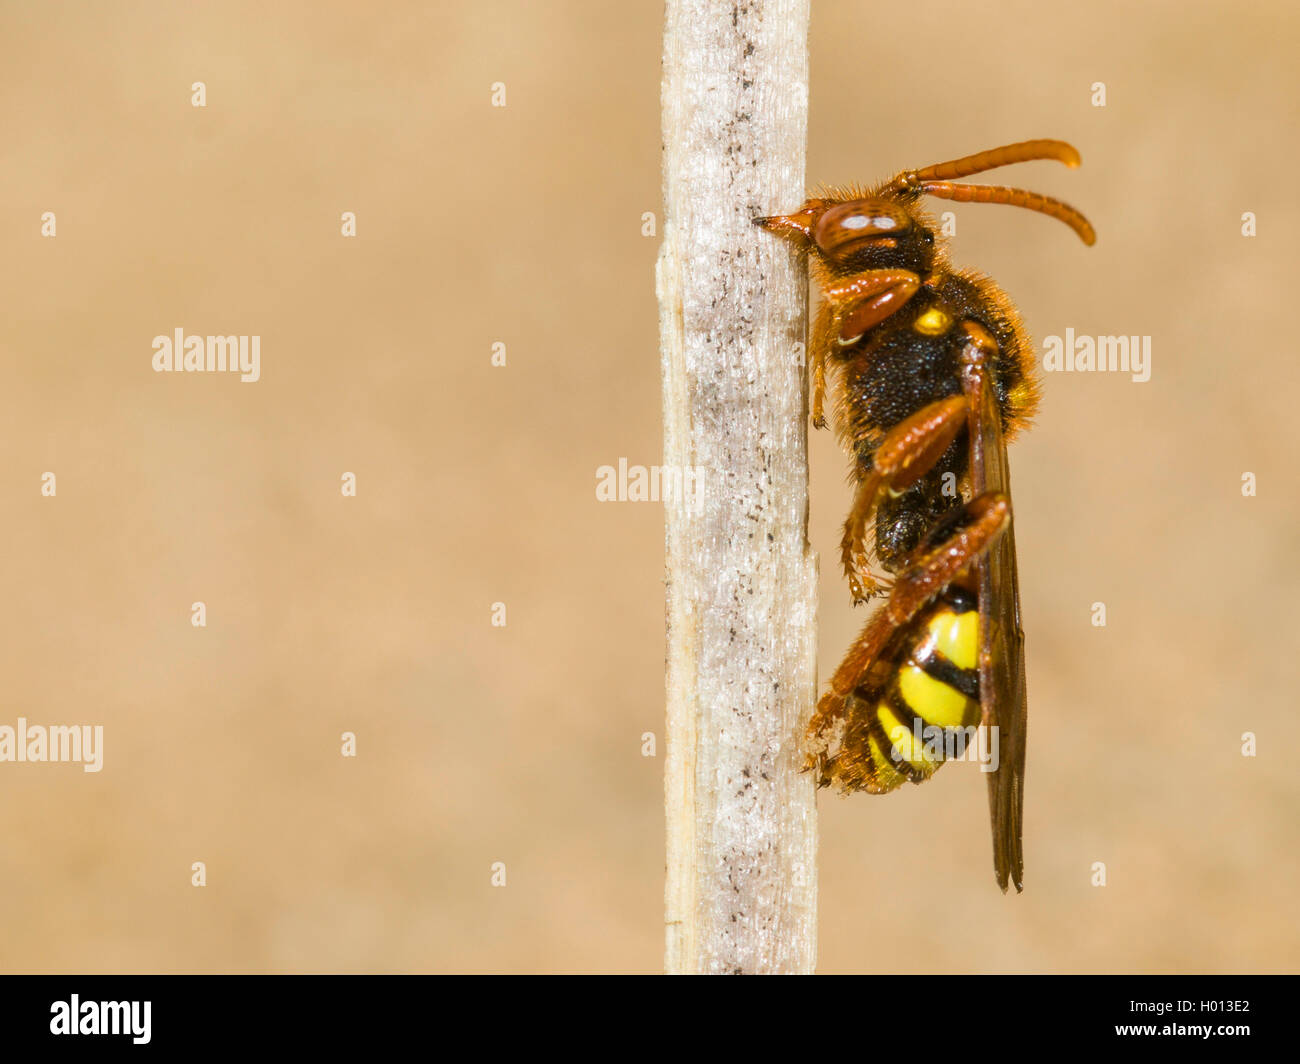 Lathbury's Nomad Bee (Nomada lathburiana), sleeping female, Germany Stock Photo